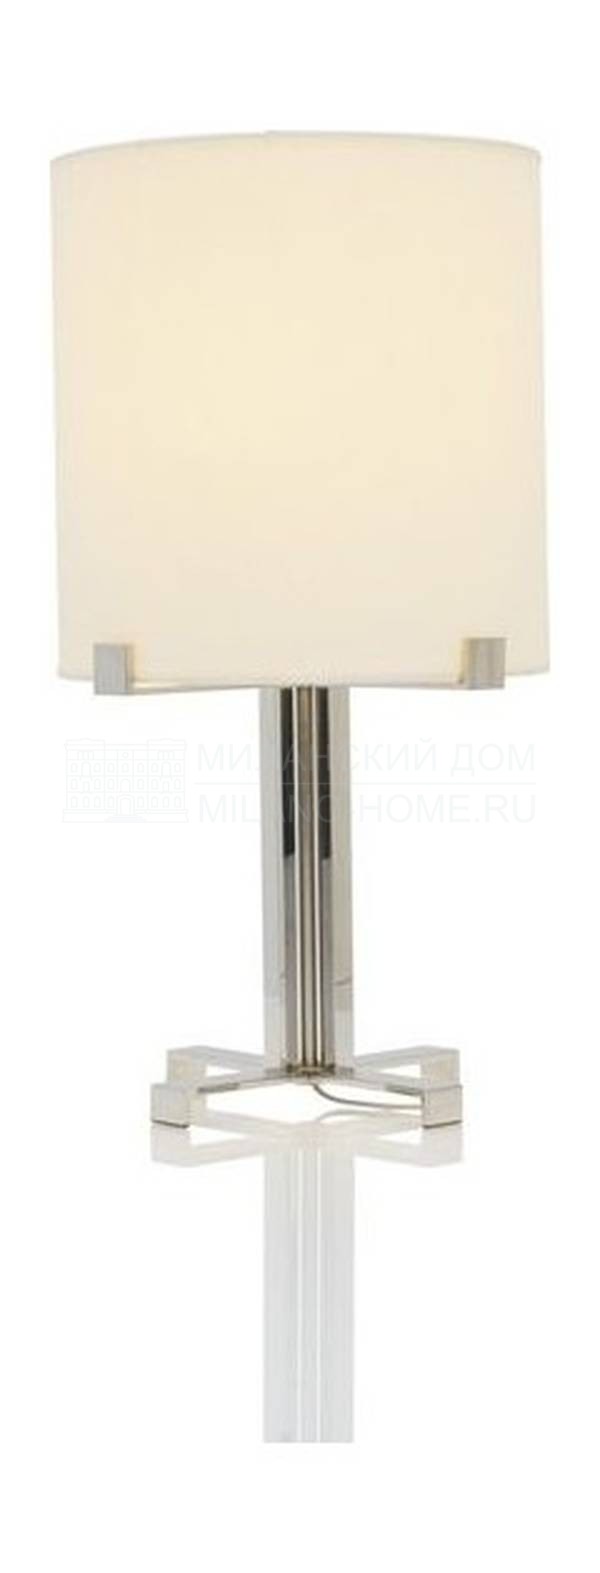 Настольная лампа Shen/table-lamp из Бельгии фабрики JNL 